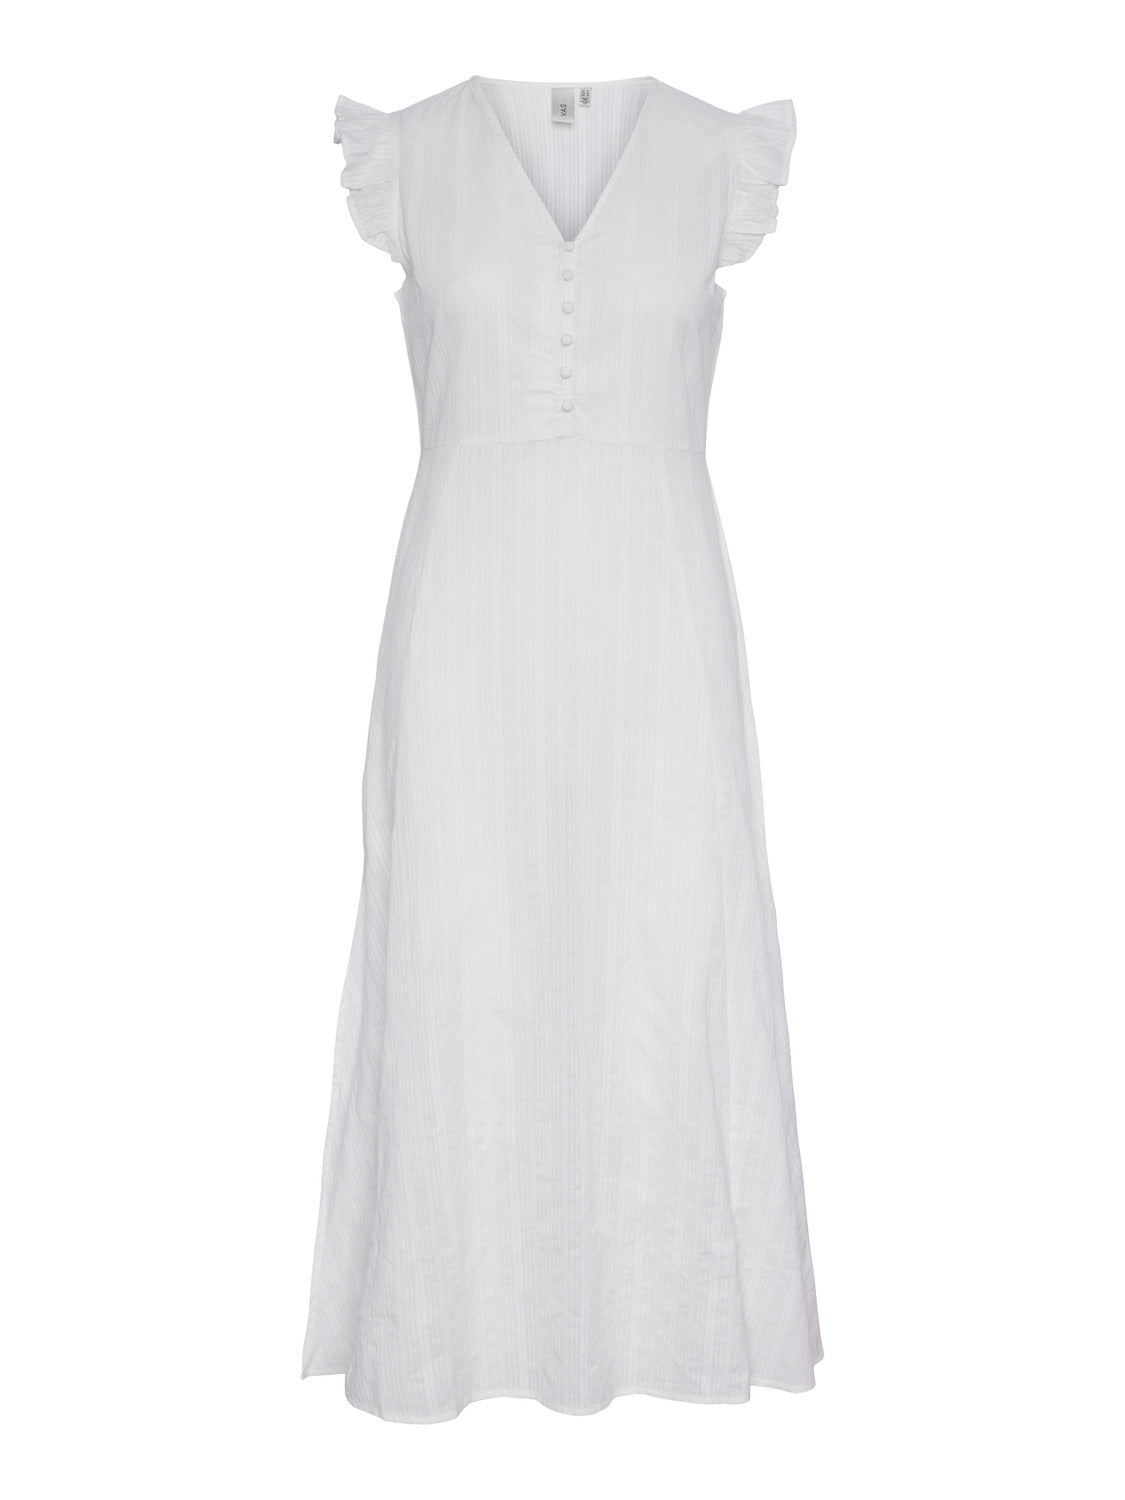 YASJOSSA Dress - Star White